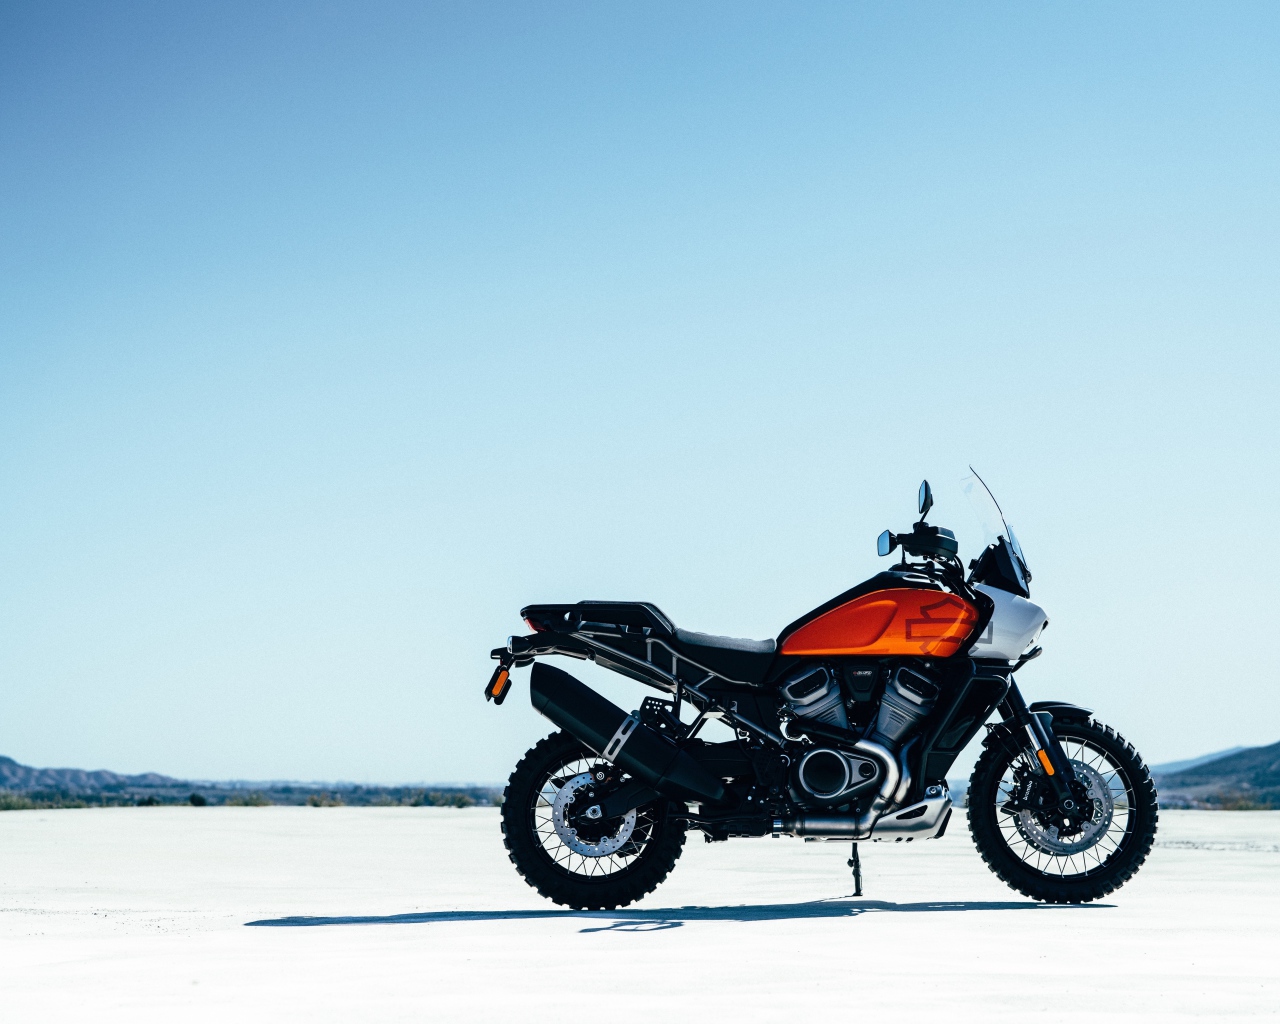 Новый стильный мотоцикл Harley-Davidson Pan America, 2021 года на фоне неба